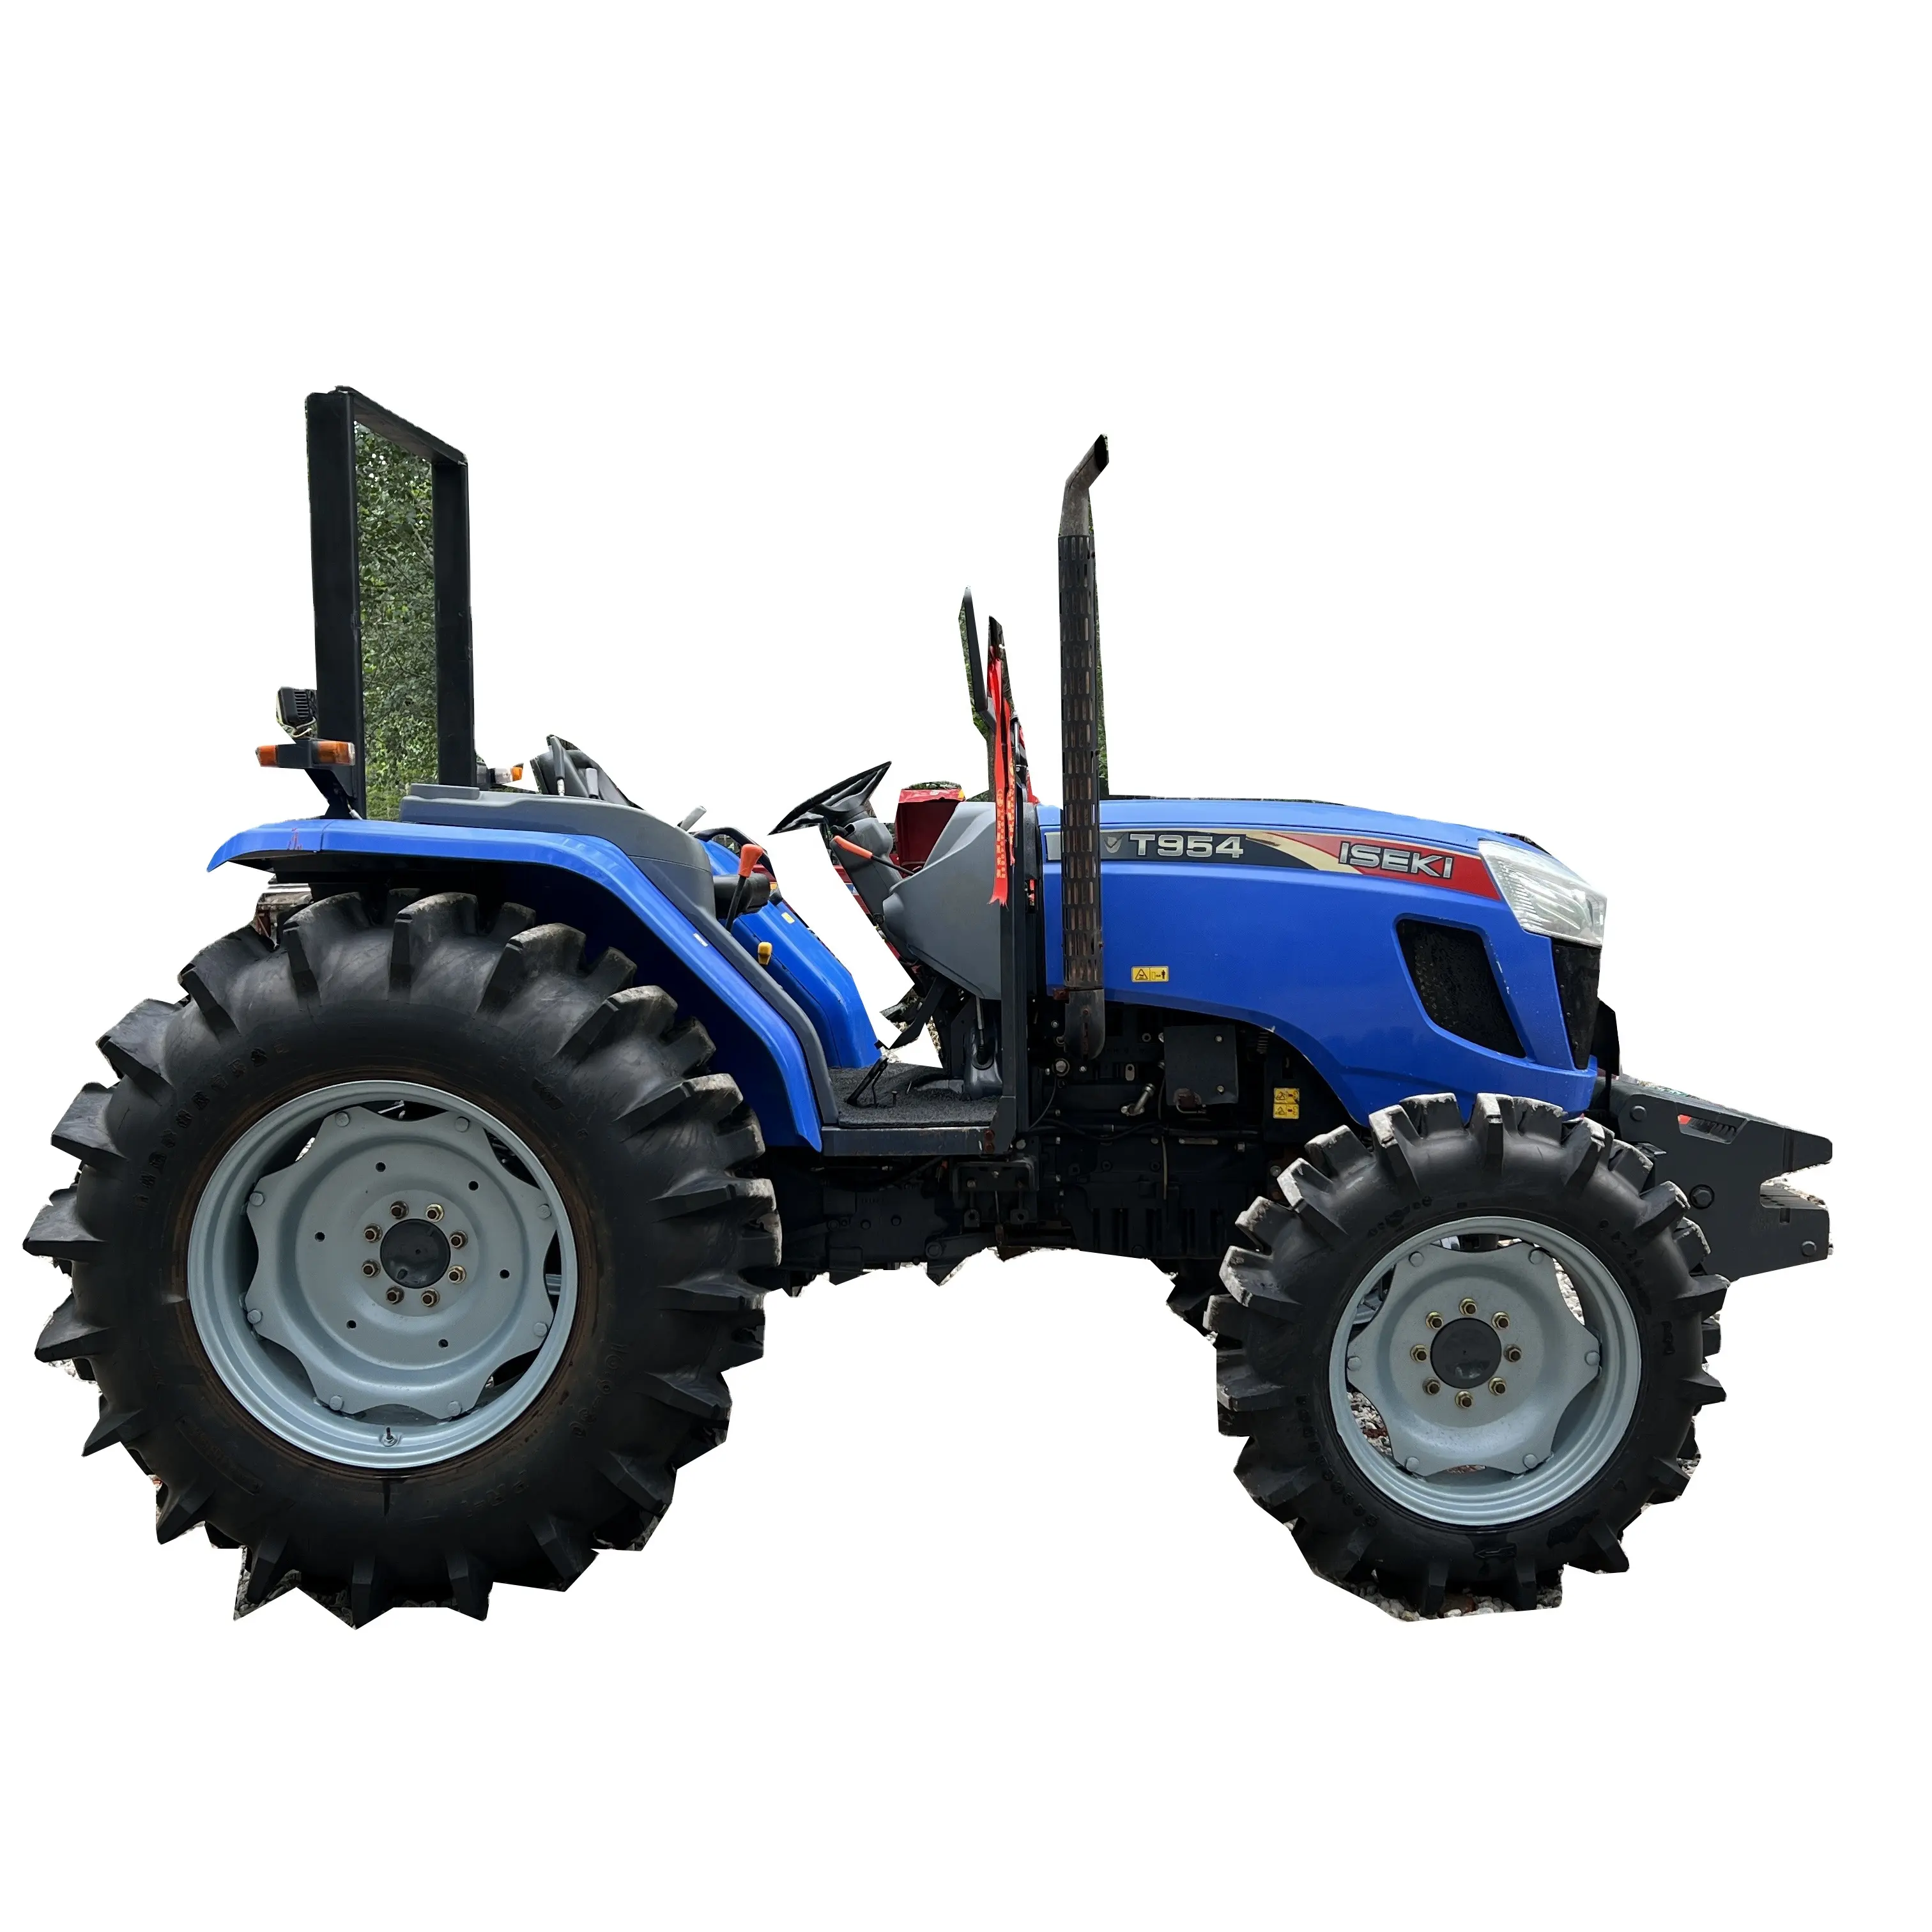 Diskon Mesin & Peralatan pertanian kualitas terbaik ISEKI T954 95HP traktor pertanian